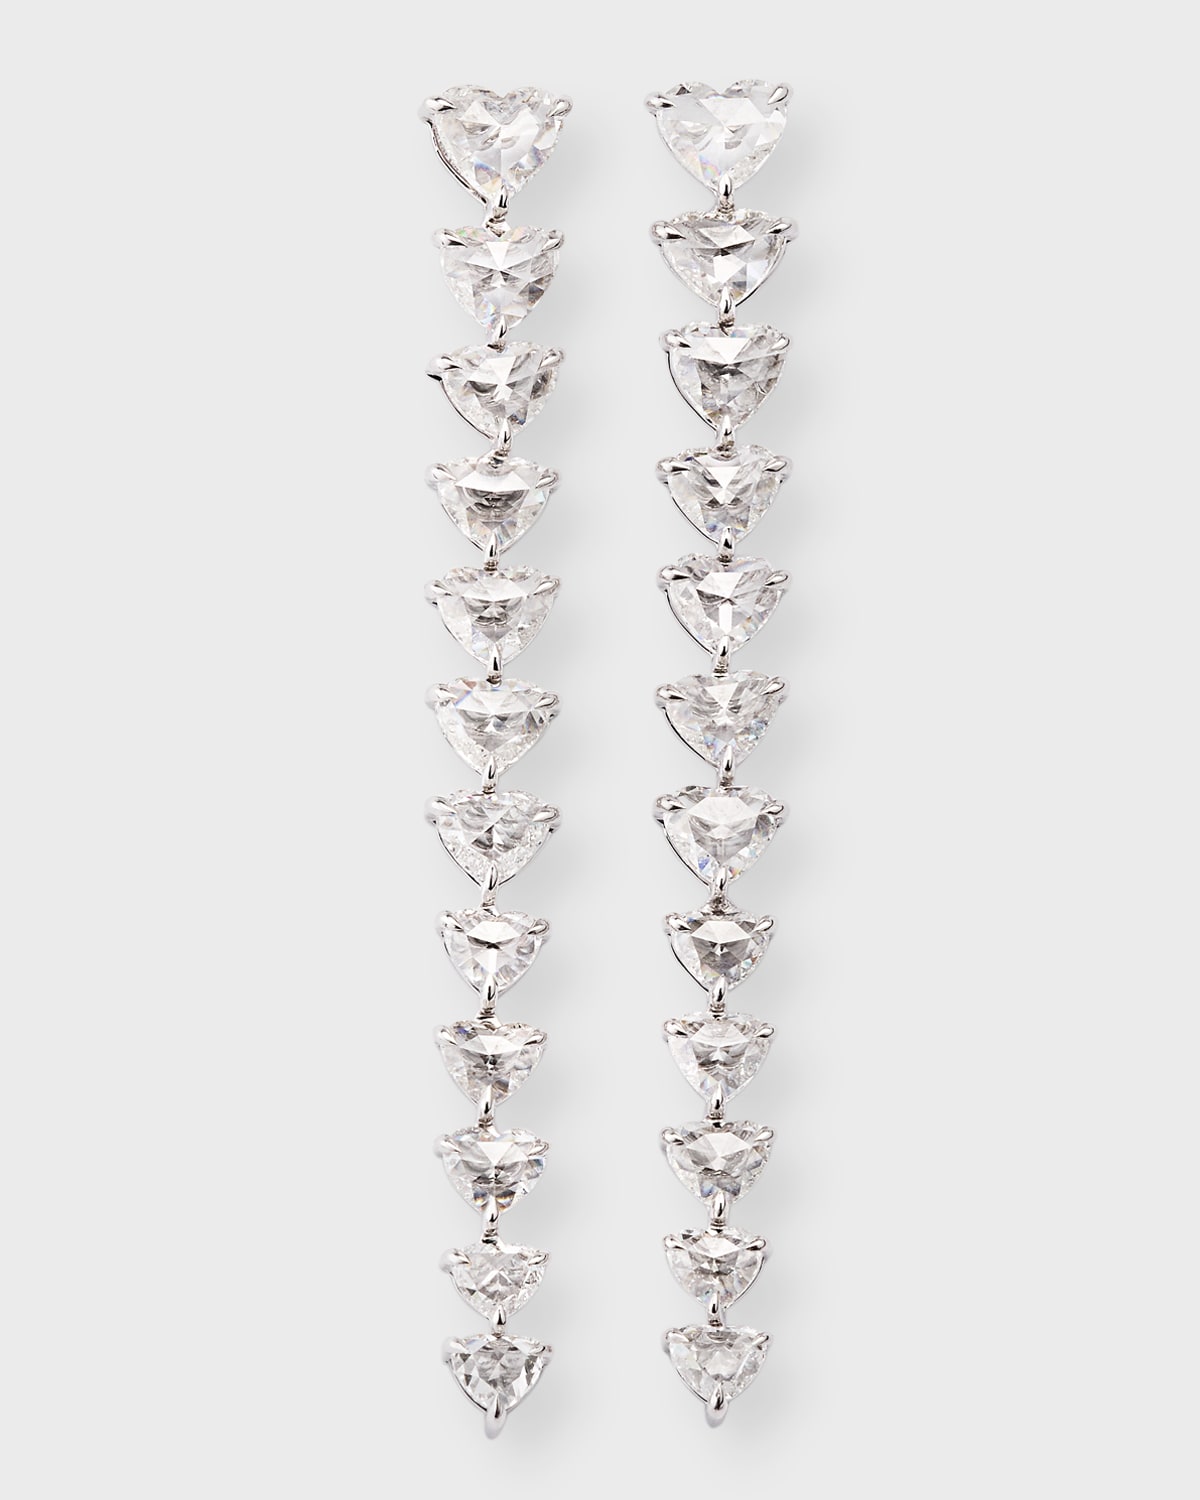 18K White Gold Heart Diamond Drop Earrings, 2"L